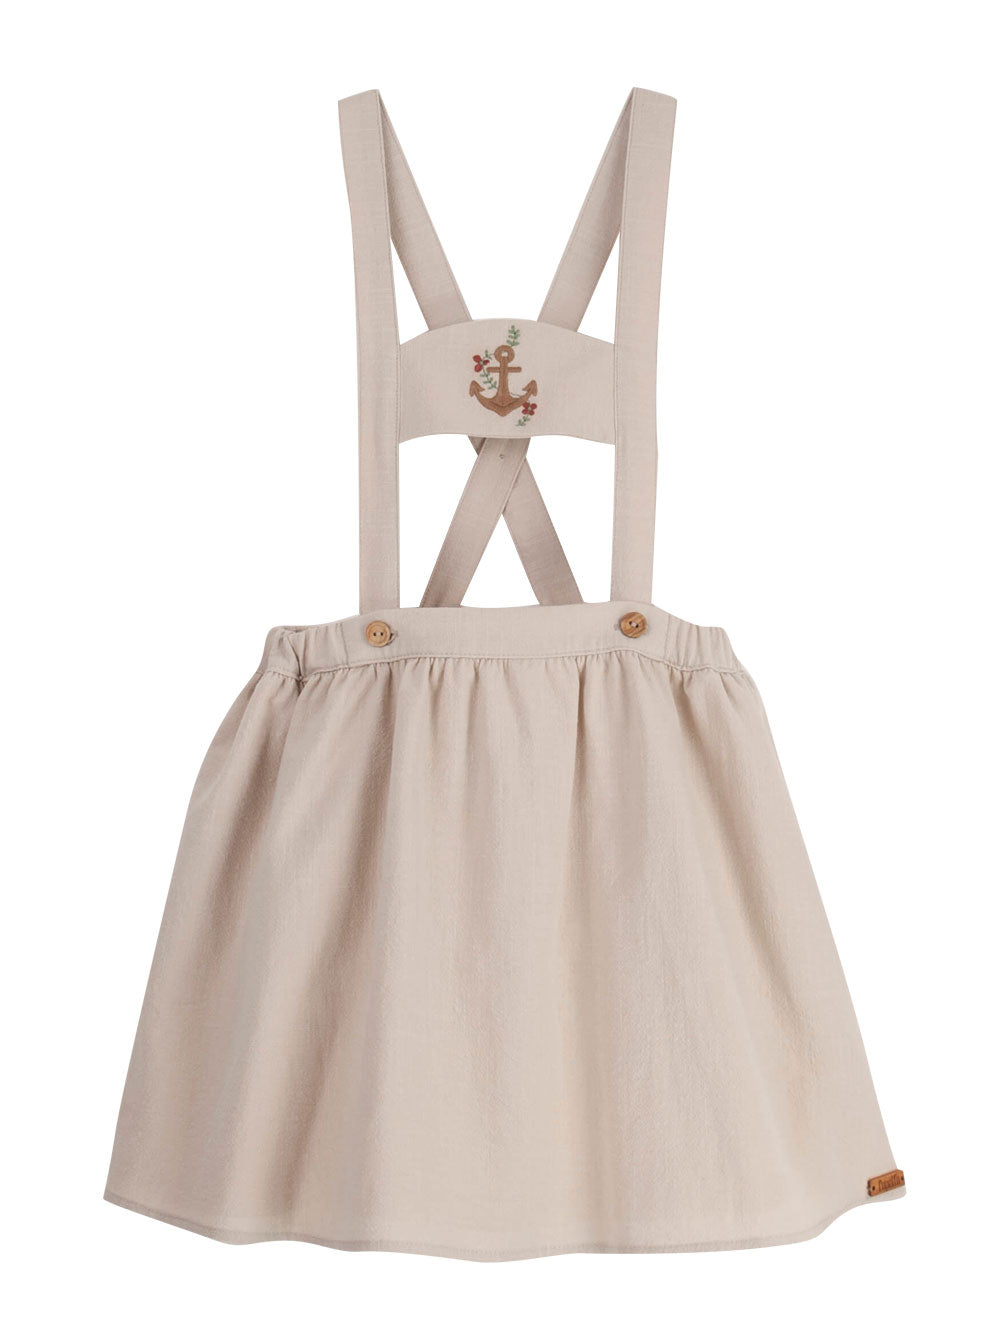 Sand Anchor Skirt